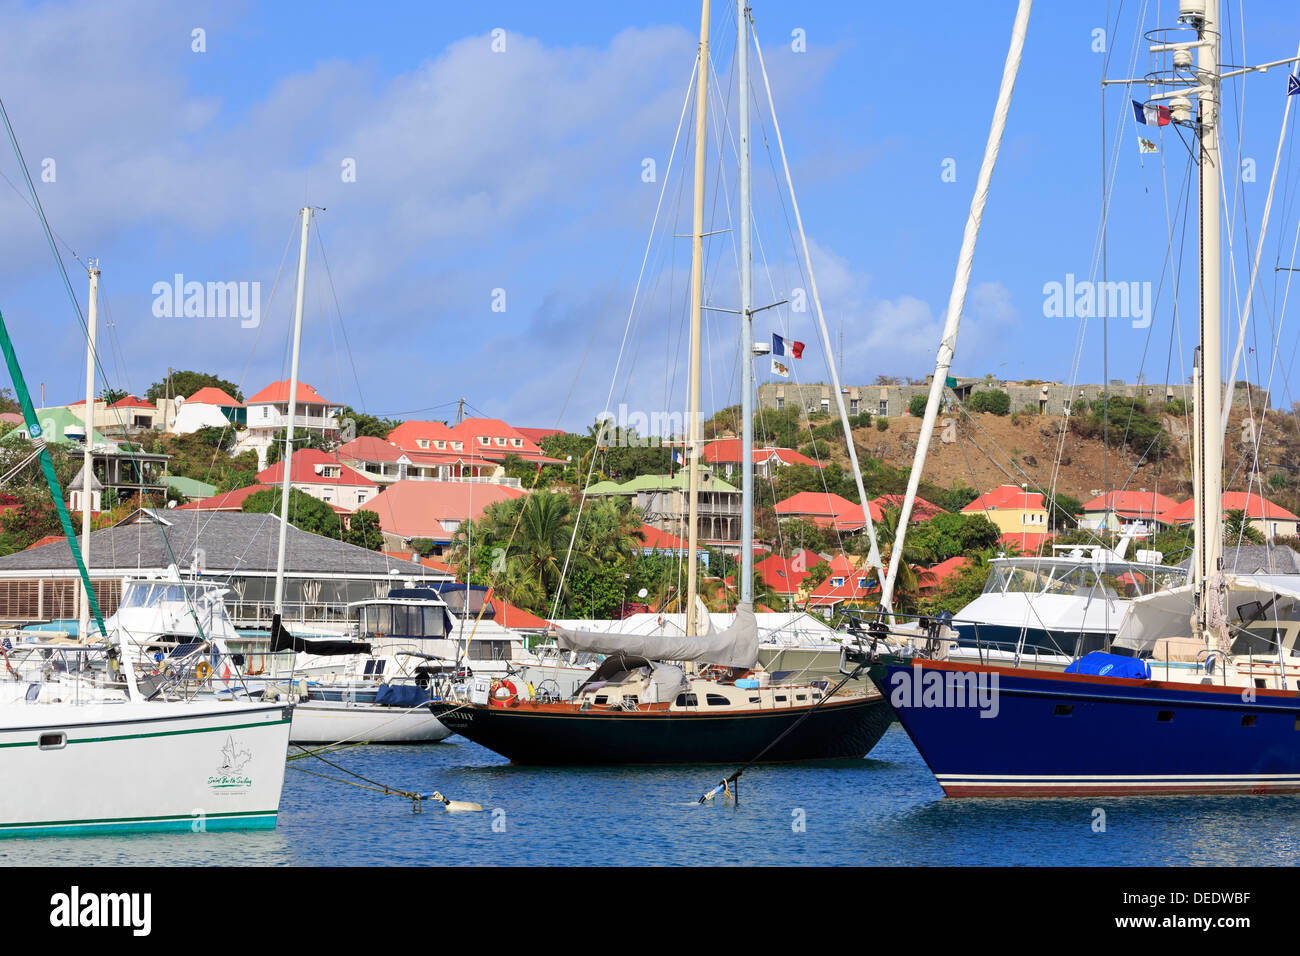 Bateaux dans le port de Gustavia, Saint Barthelemy (St. Barth), les îles sous le vent, Antilles, Caraïbes, Amérique Centrale Banque D'Images